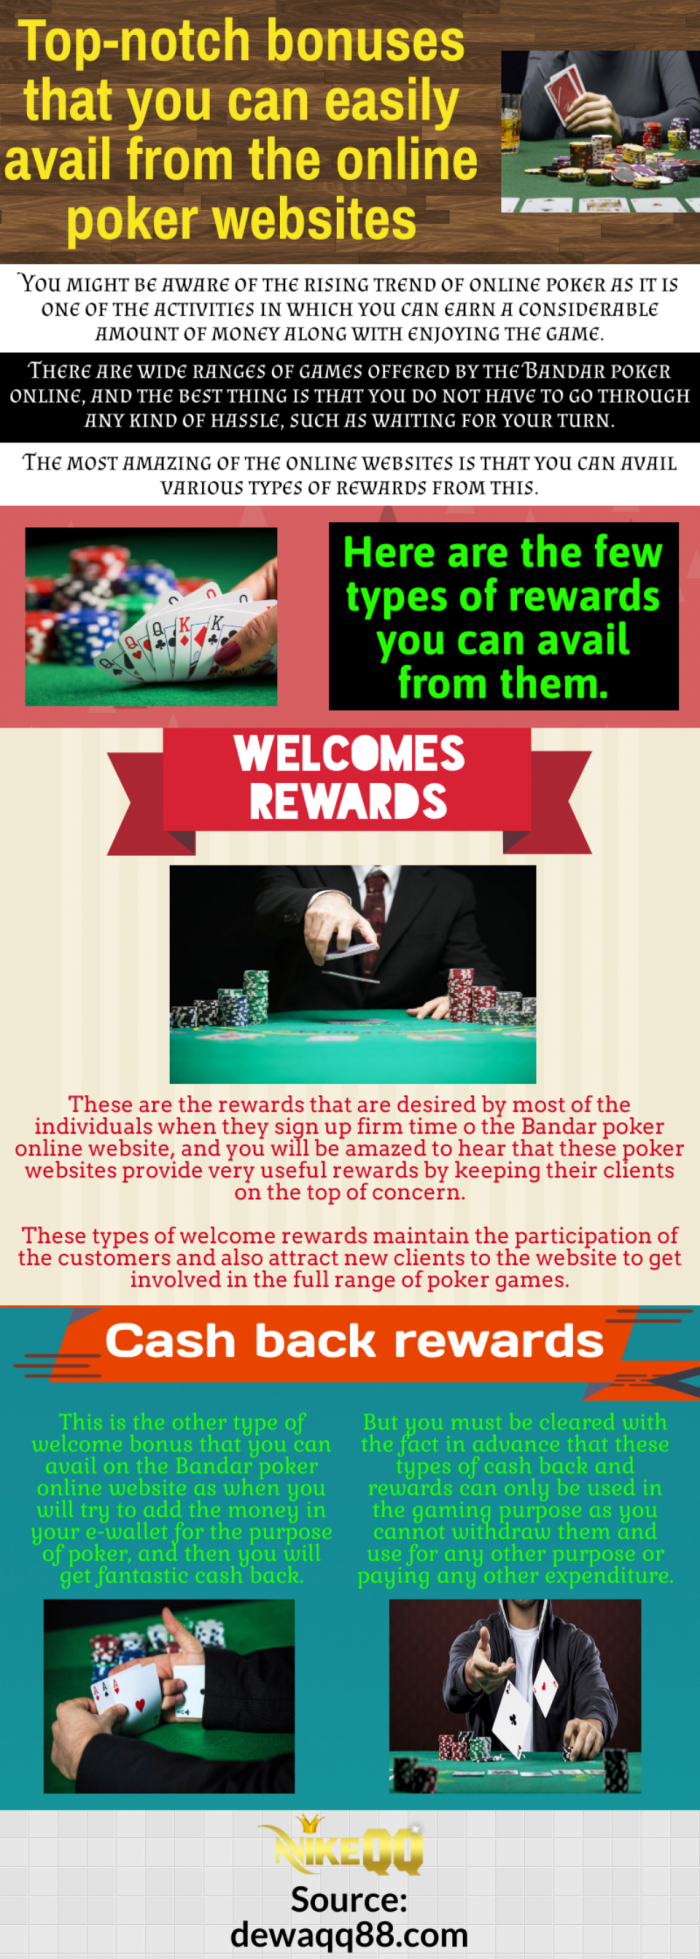 Play poker on Bandar poker online